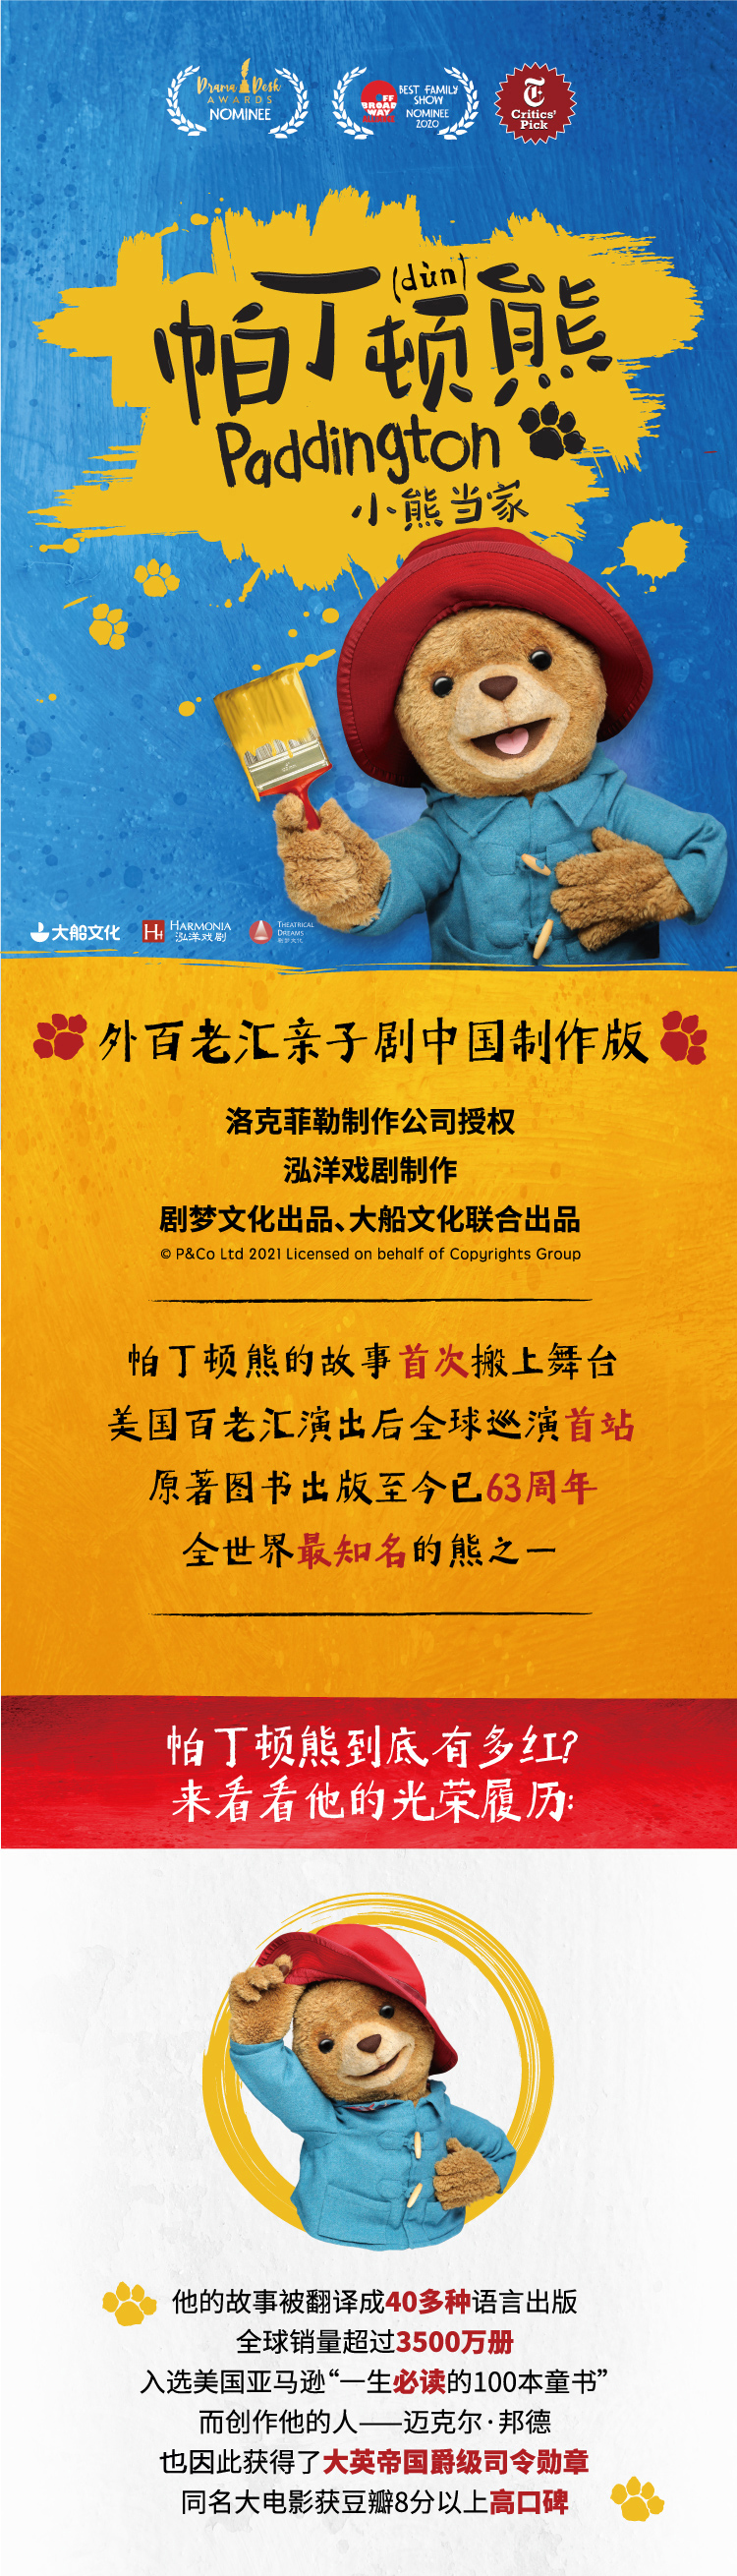 2021大船文化·外百老汇亲子剧《帕丁顿熊之小熊当家》中国制作版-北京站